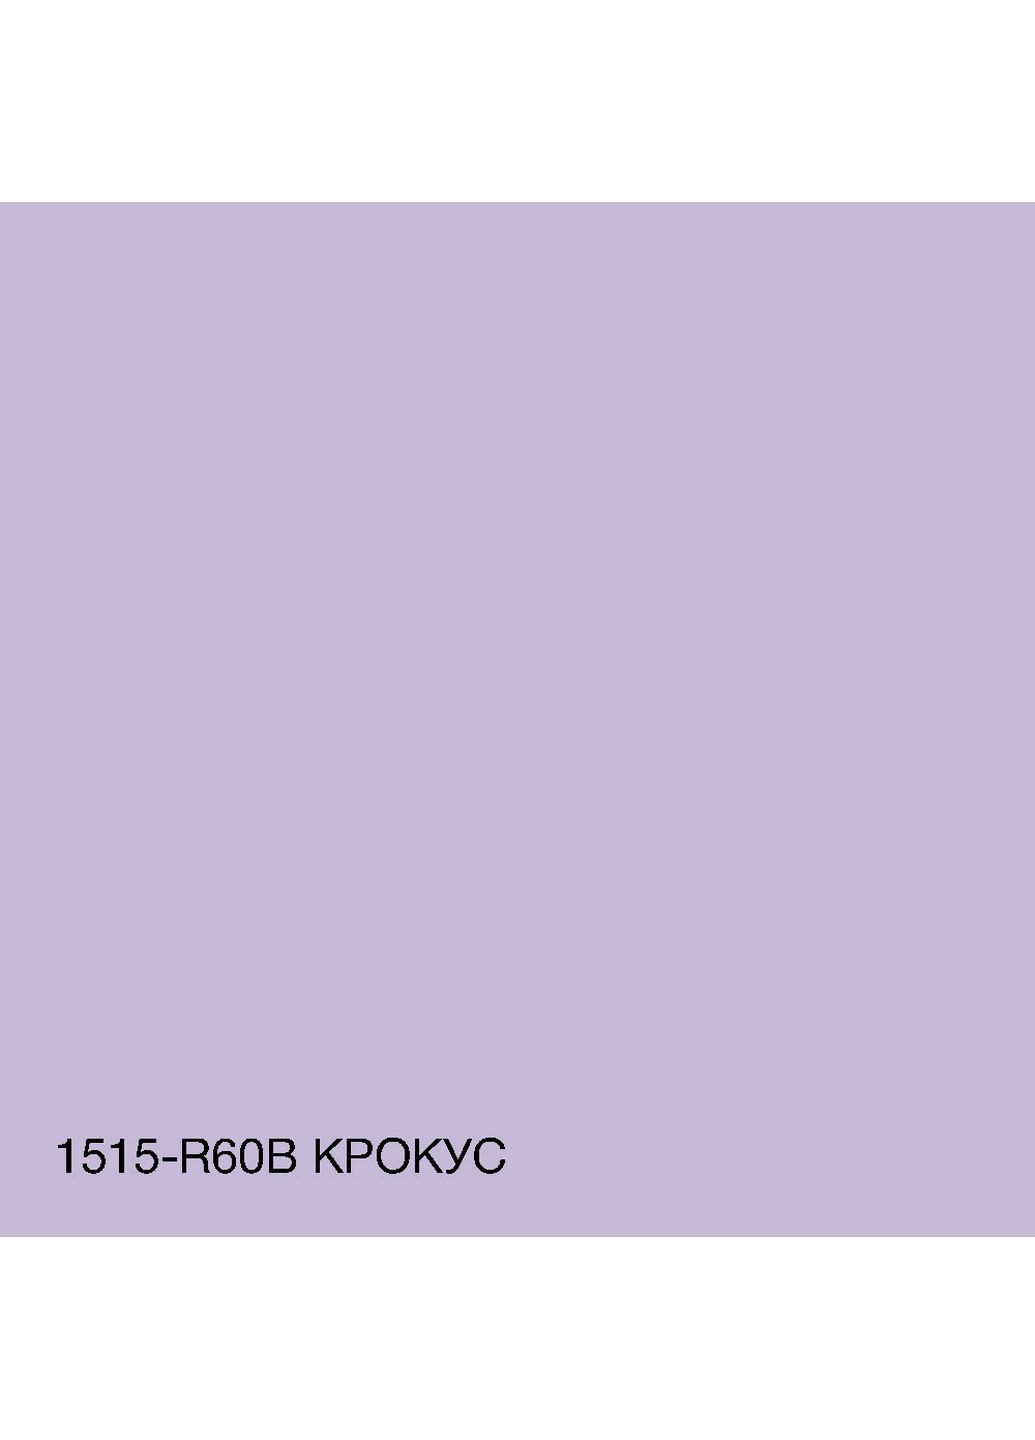 Краска интерьерная латексная 1515-R60B 3 л SkyLine (289465539)